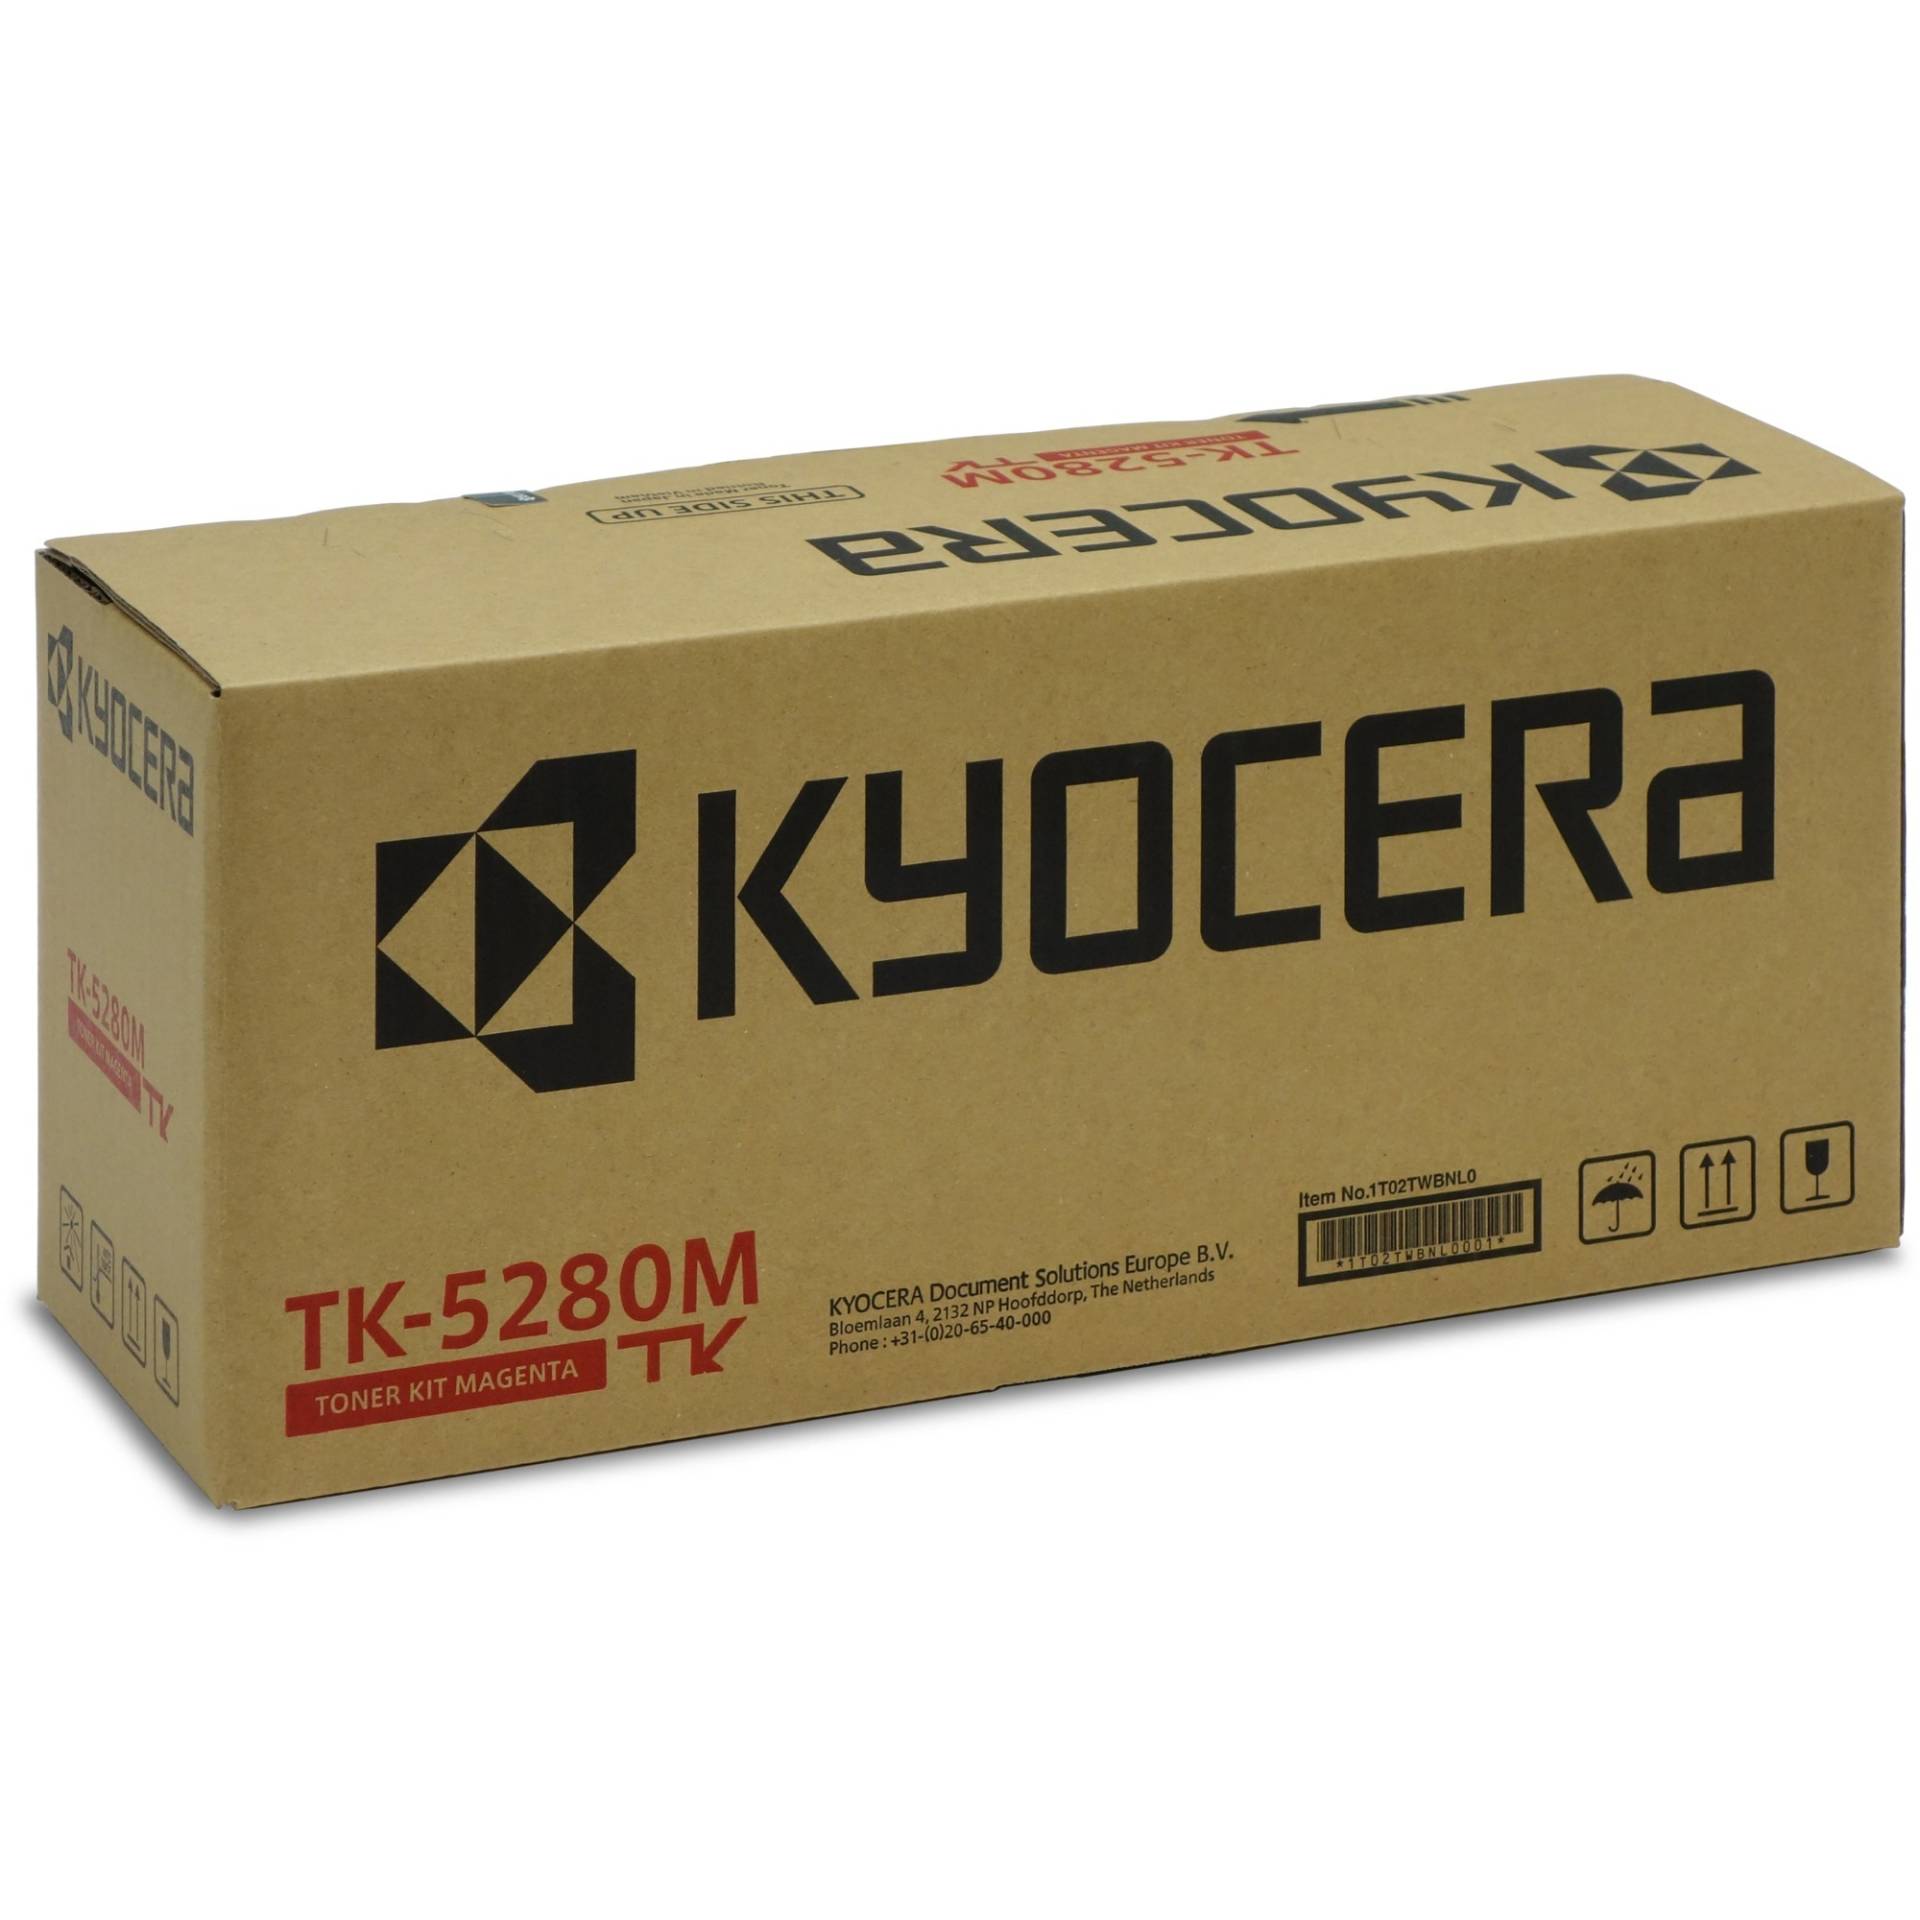 Toner magenta TK-5280M von Kyocera